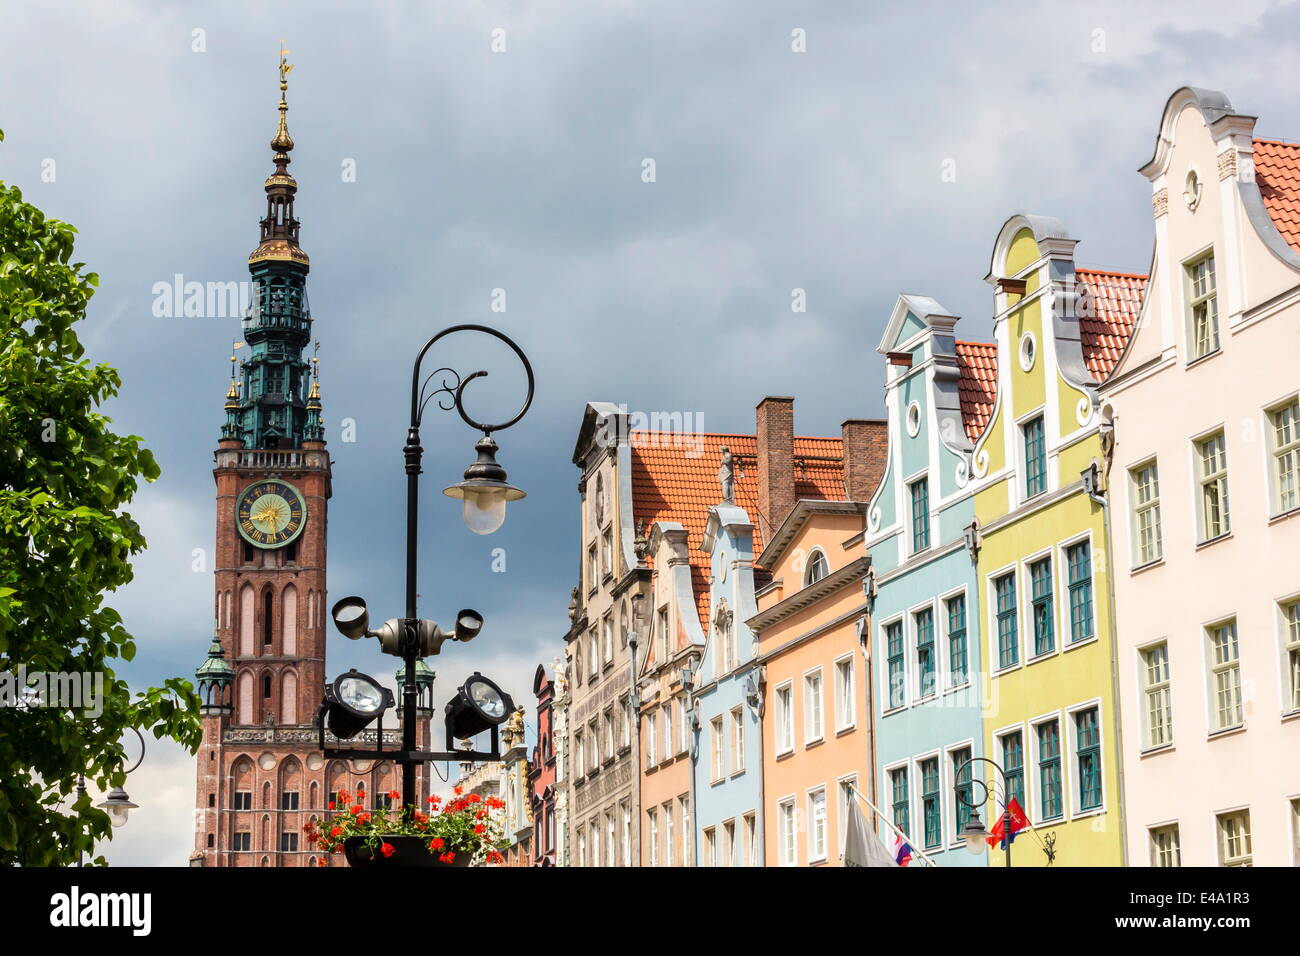 El mercado de largo, Dlugi Targ, con el reloj del ayuntamiento, Gdansk, Polonia, Europa Foto de stock